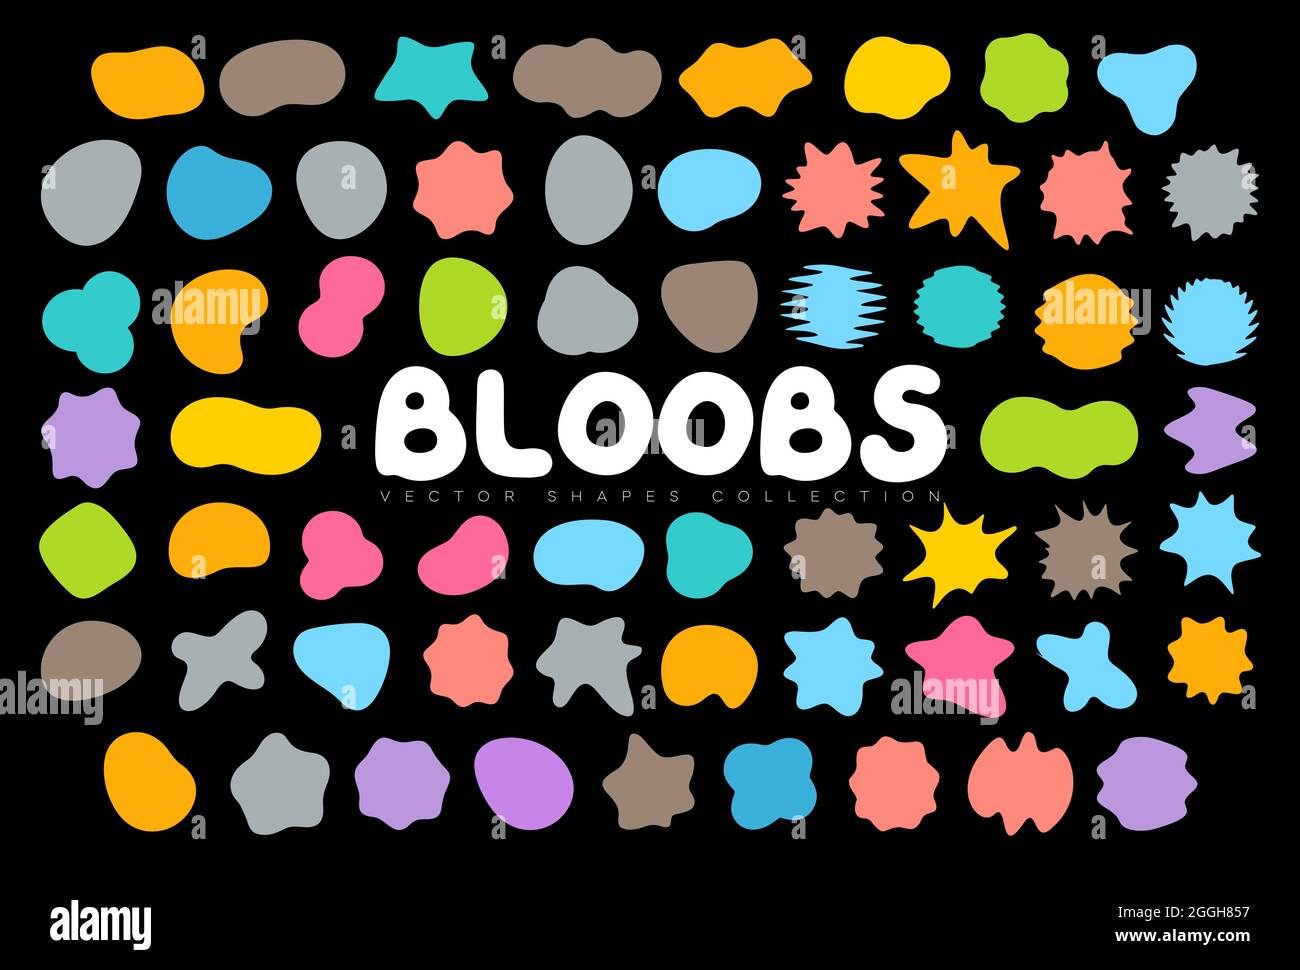 Collezione Bloobs Shape, macchie astratte casuali, silhouette a bolle colorate, set a forma di liquido irregolare, fluido ondulato organico, spot artistico per sfondo Illustrazione Vettoriale